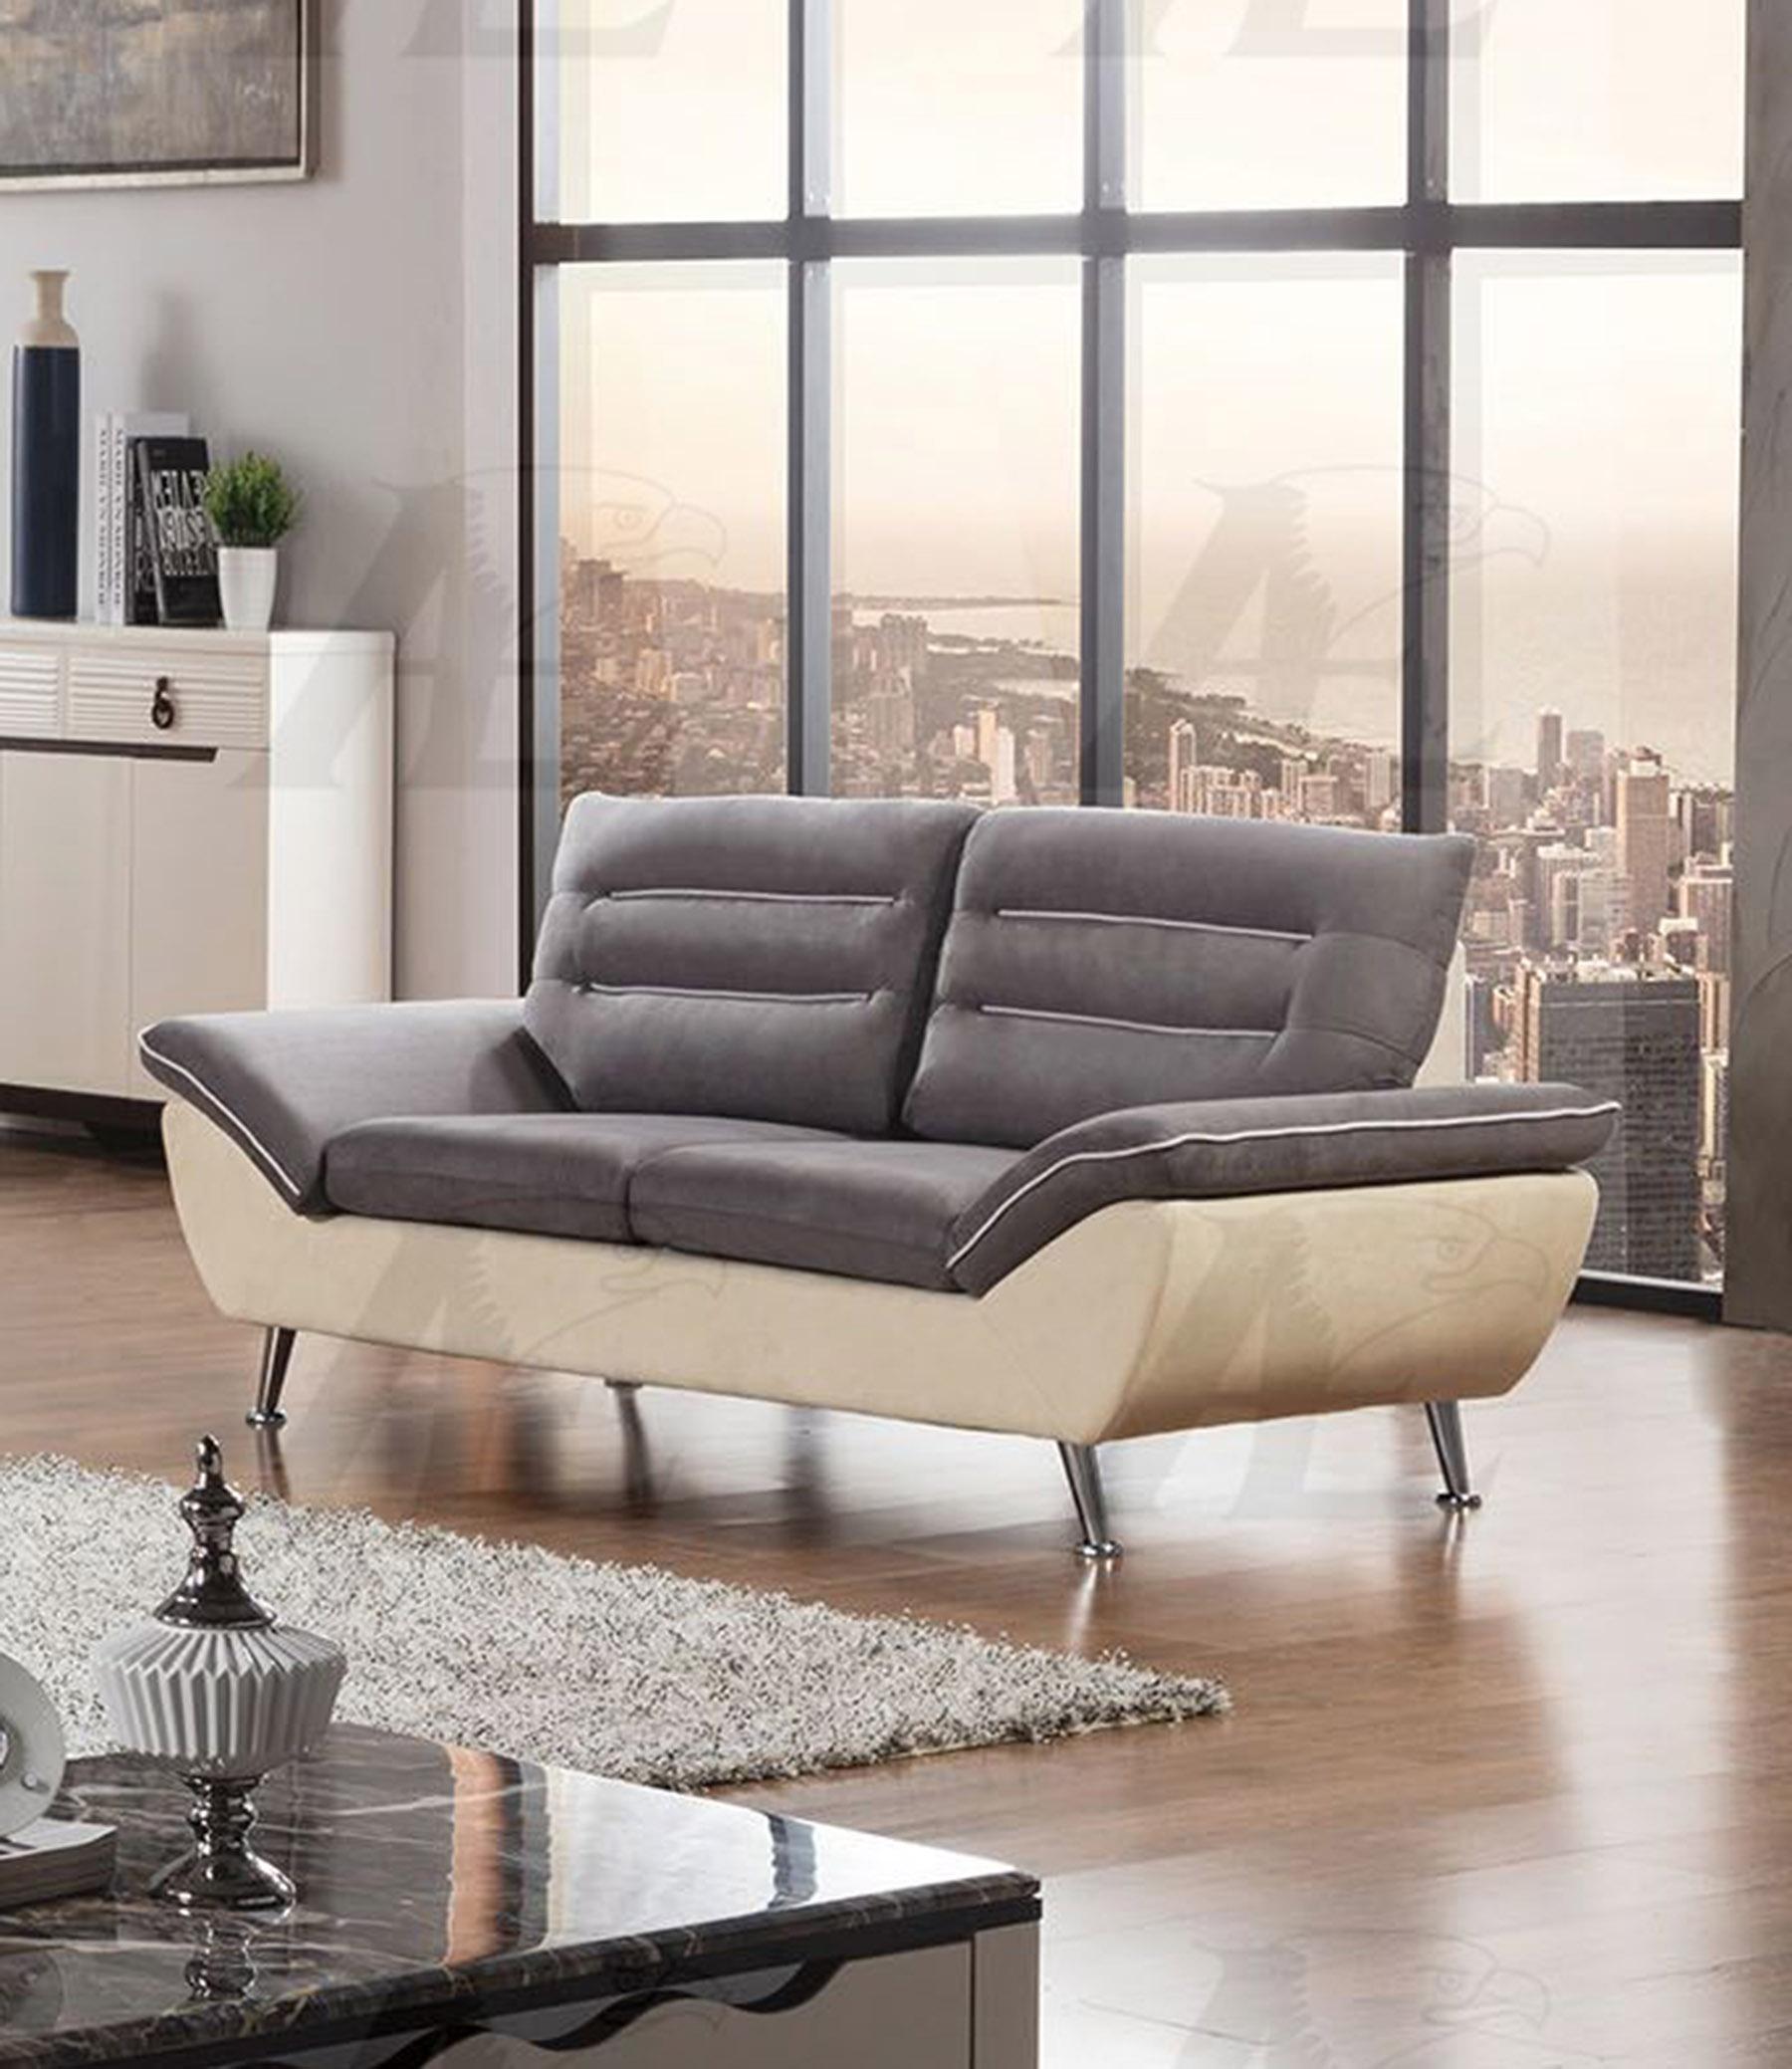 

    
AE2365 Set-2 American Eagle Furniture Sofa and Loveseat Set
